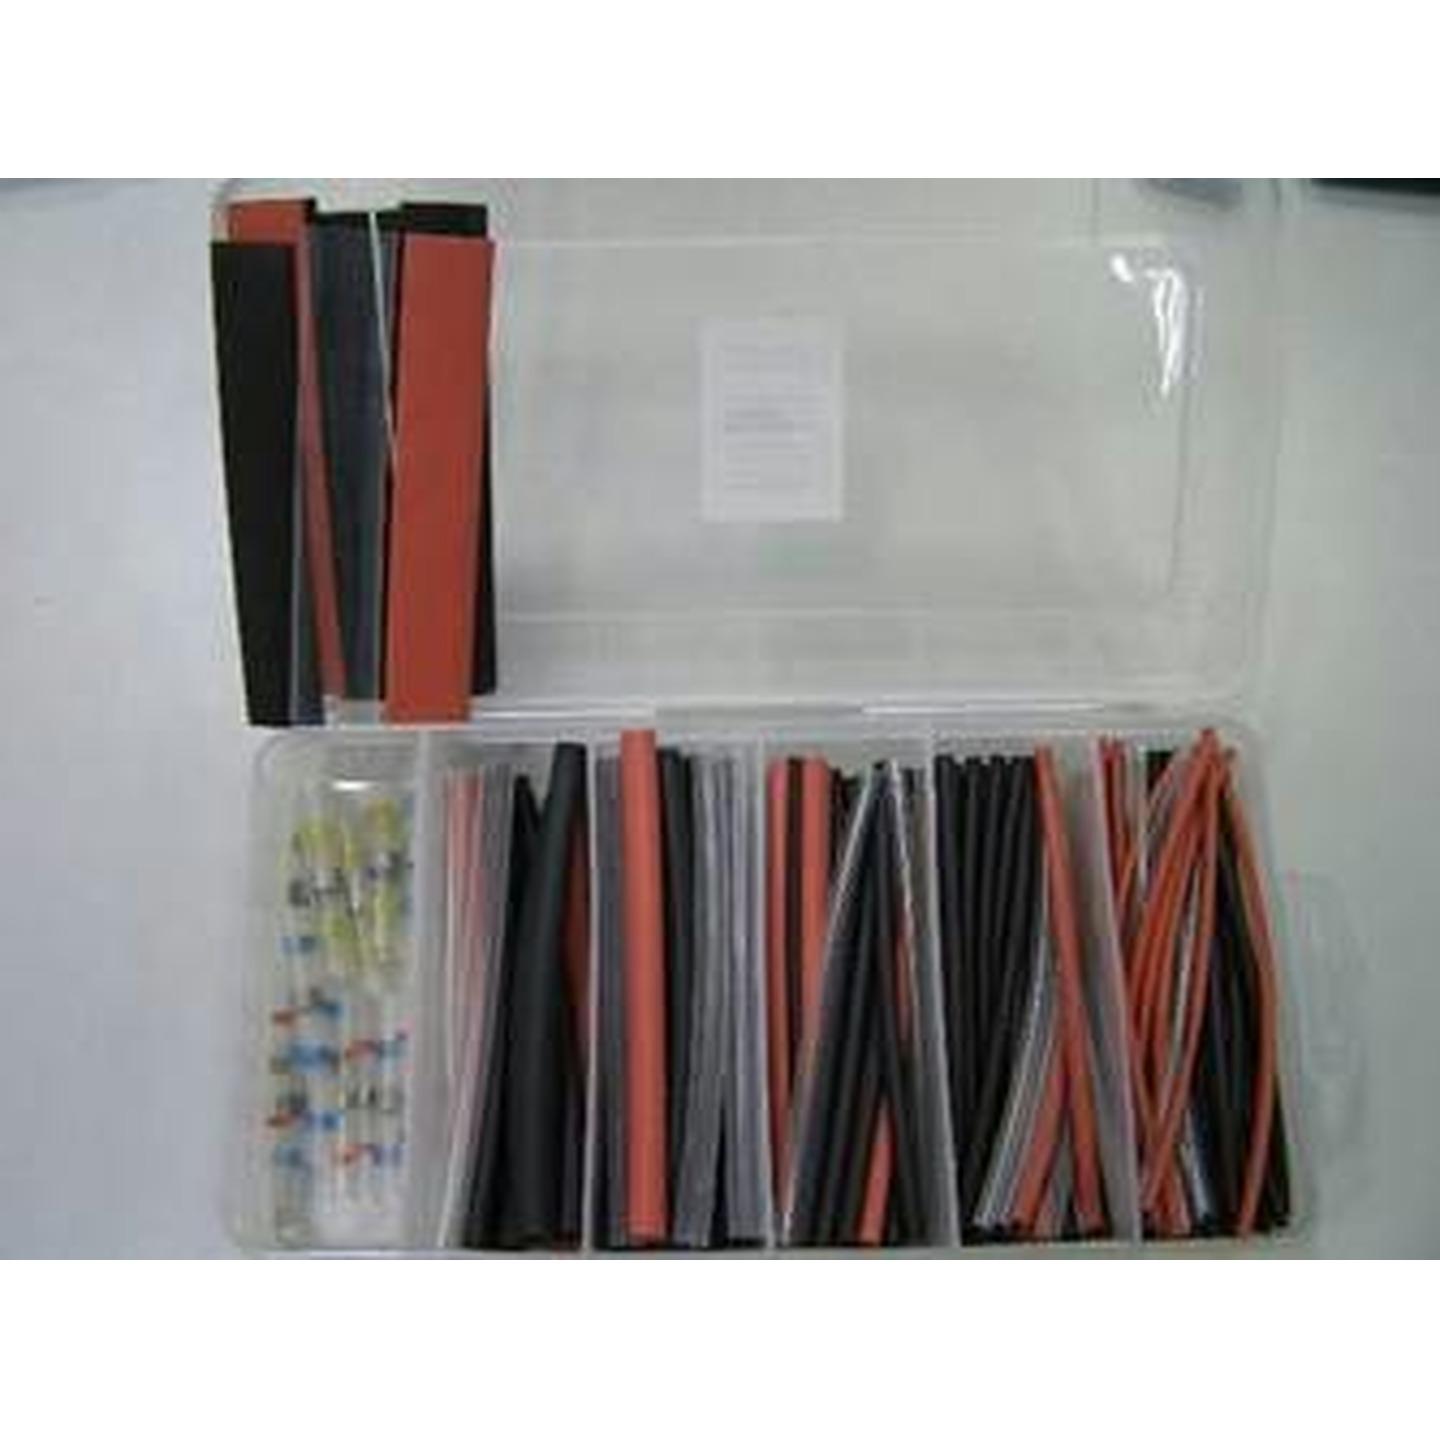 Pro Soldering Gas Kit with Wire Strippers/Cutters/Heatshrink